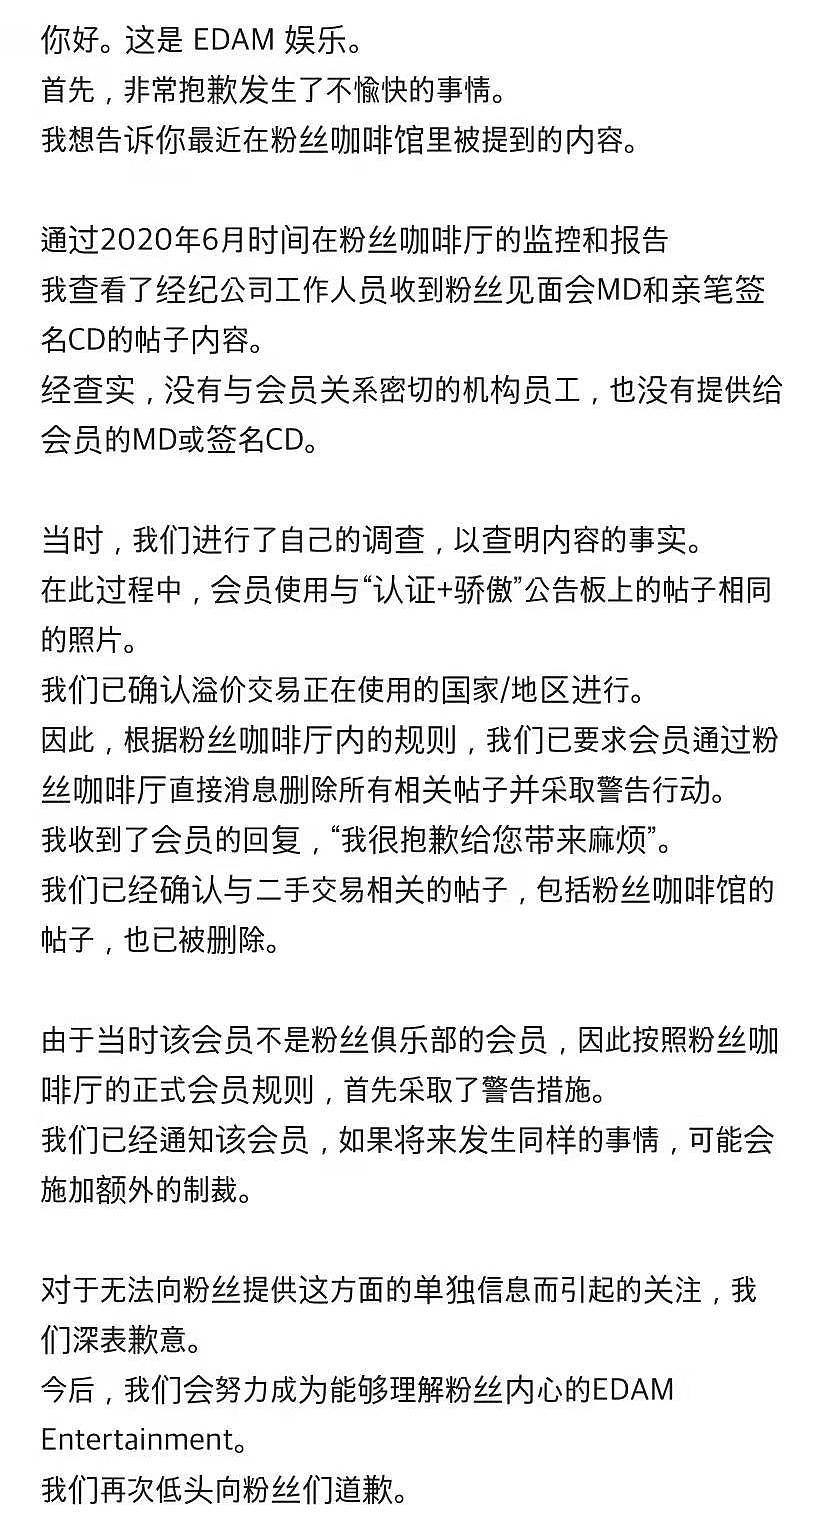 IU 经纪公司为差别对待粉丝道歉 称系工作人员个人行为 - 3